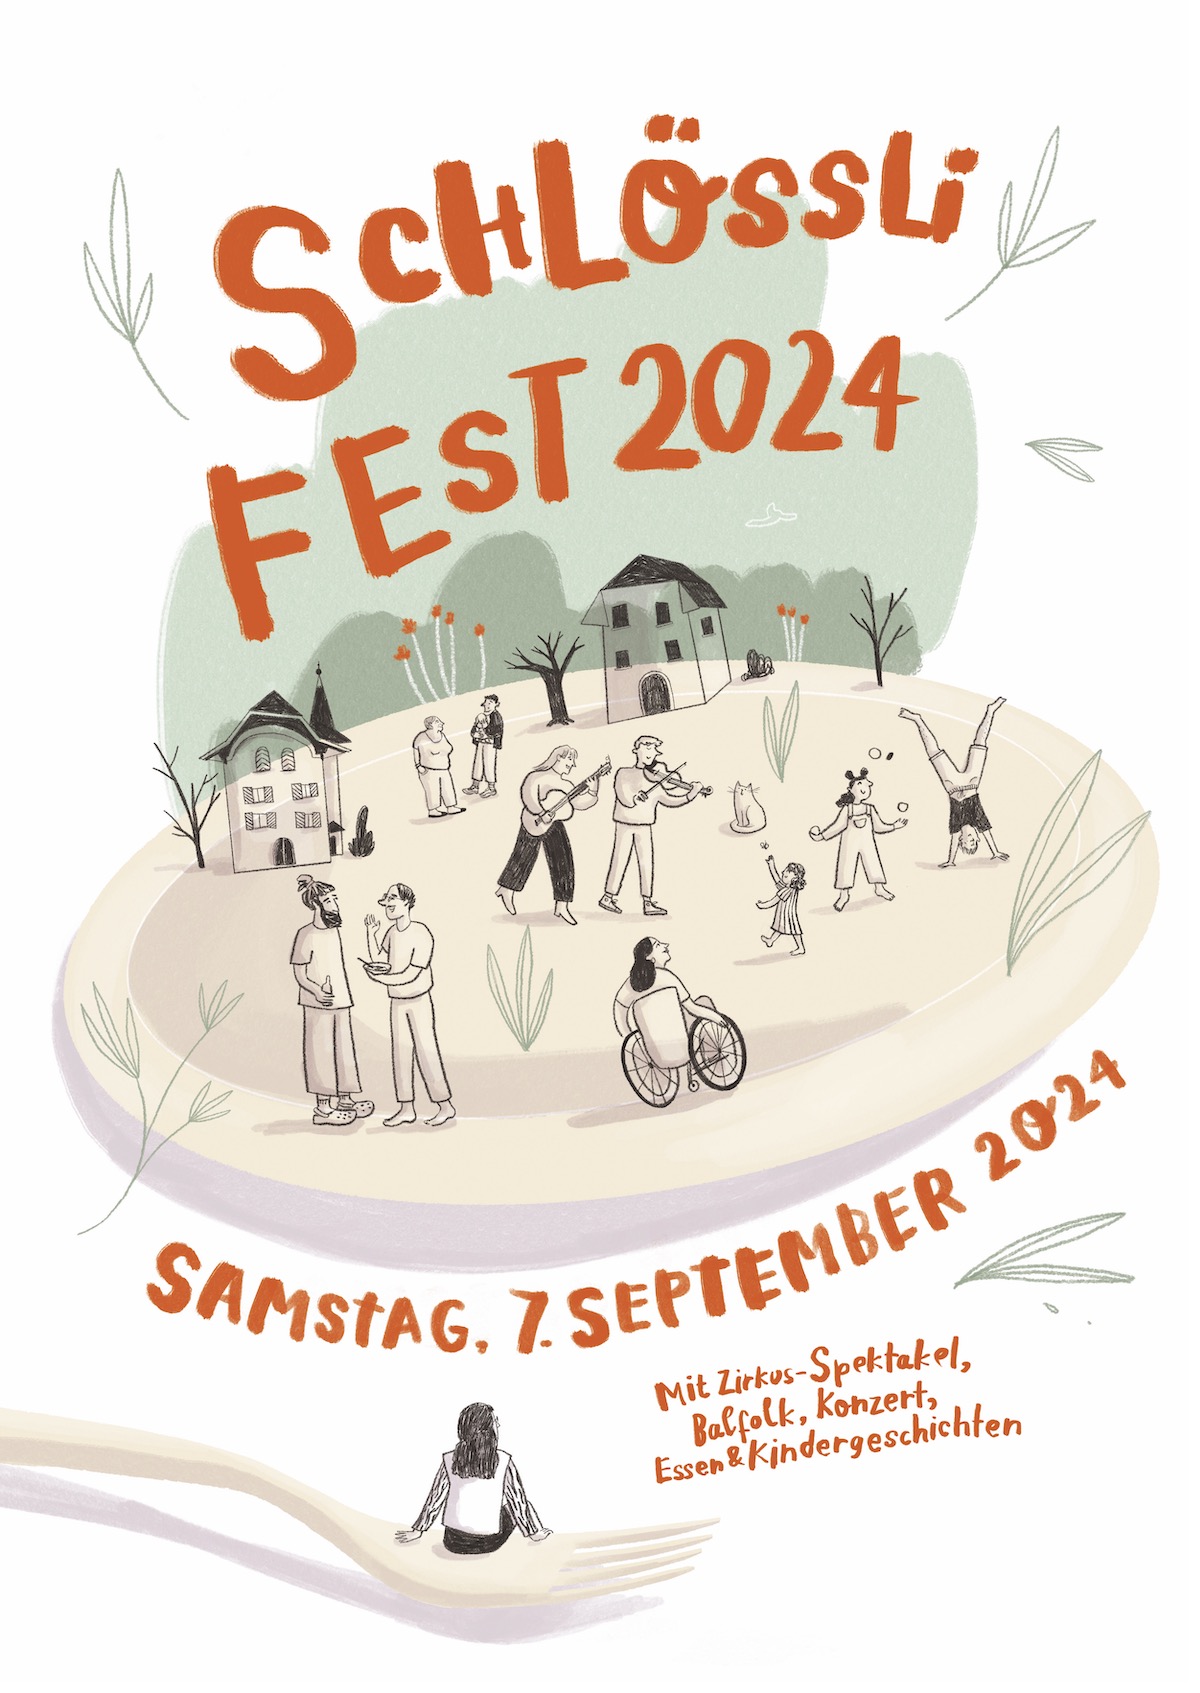 Schlössli Fest 2024 am Samstag, 7. September, 2024. Mit Musik, Balfok, Zirkus-Spektakel, Kindergeschichten und Essen.